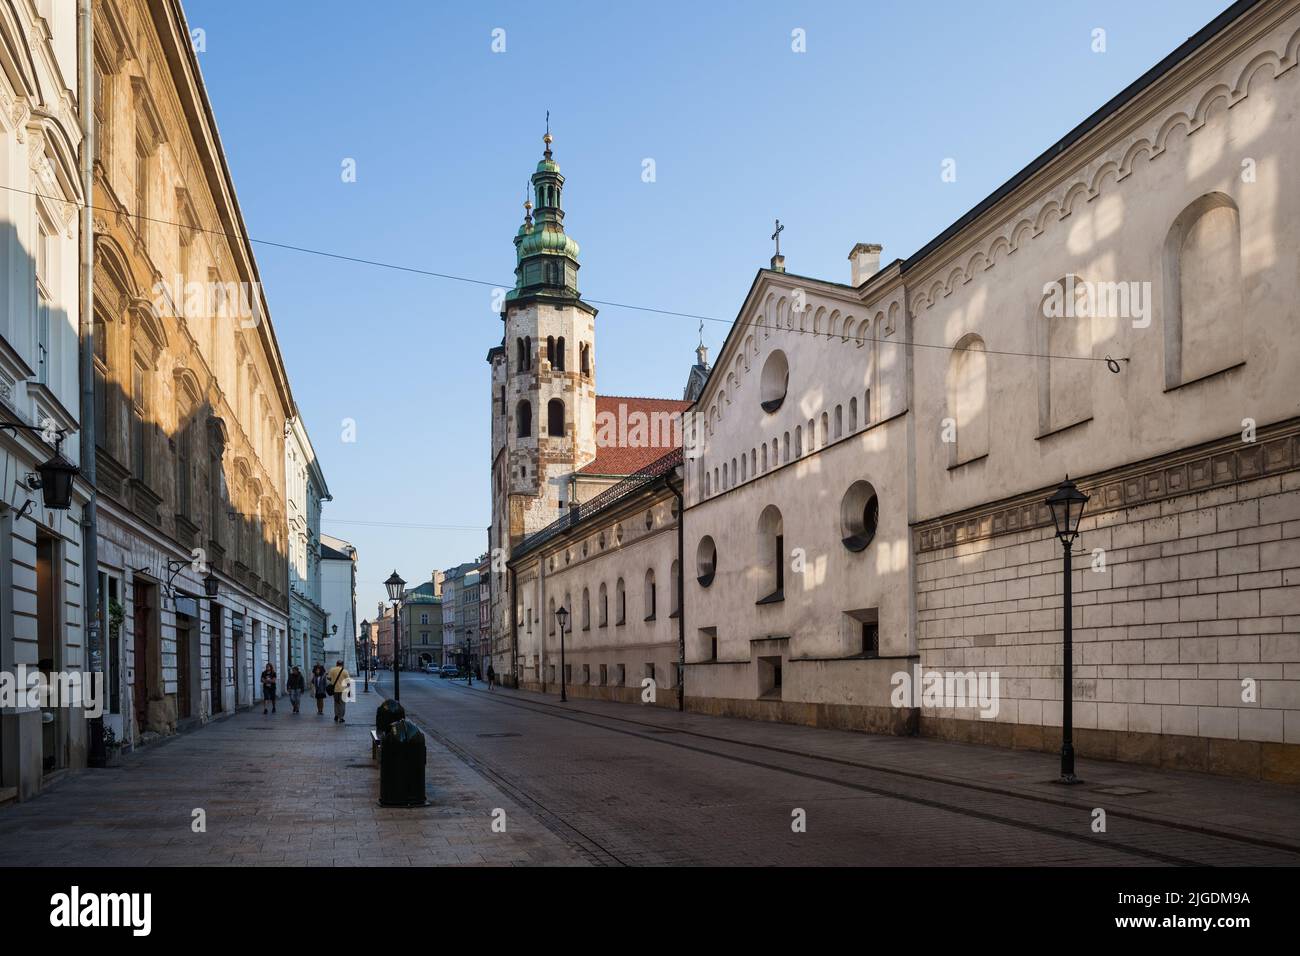 Ville de Cracovie en Pologne, rue Grodzka avec le monastère de l'ordre de Sainte Clare et l'église de Saint Andrew l'Apôtre. Banque D'Images